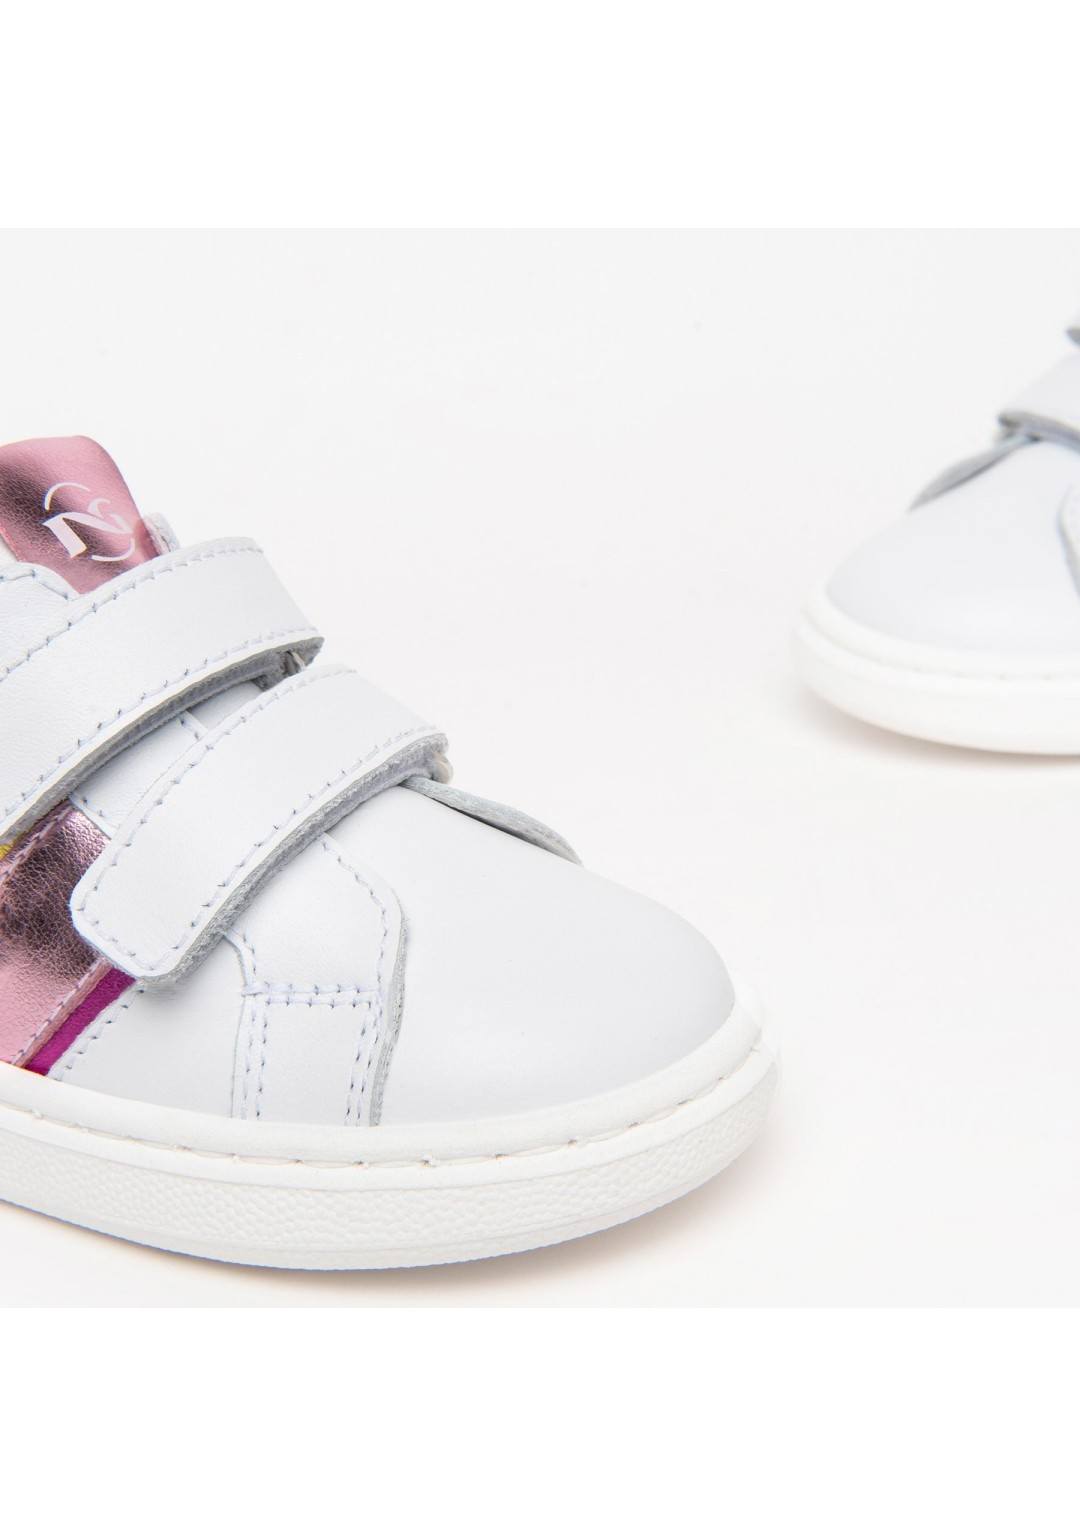 NEROGIARDINI - Sneakers Cuore - Bambine e ragazze - 374 F